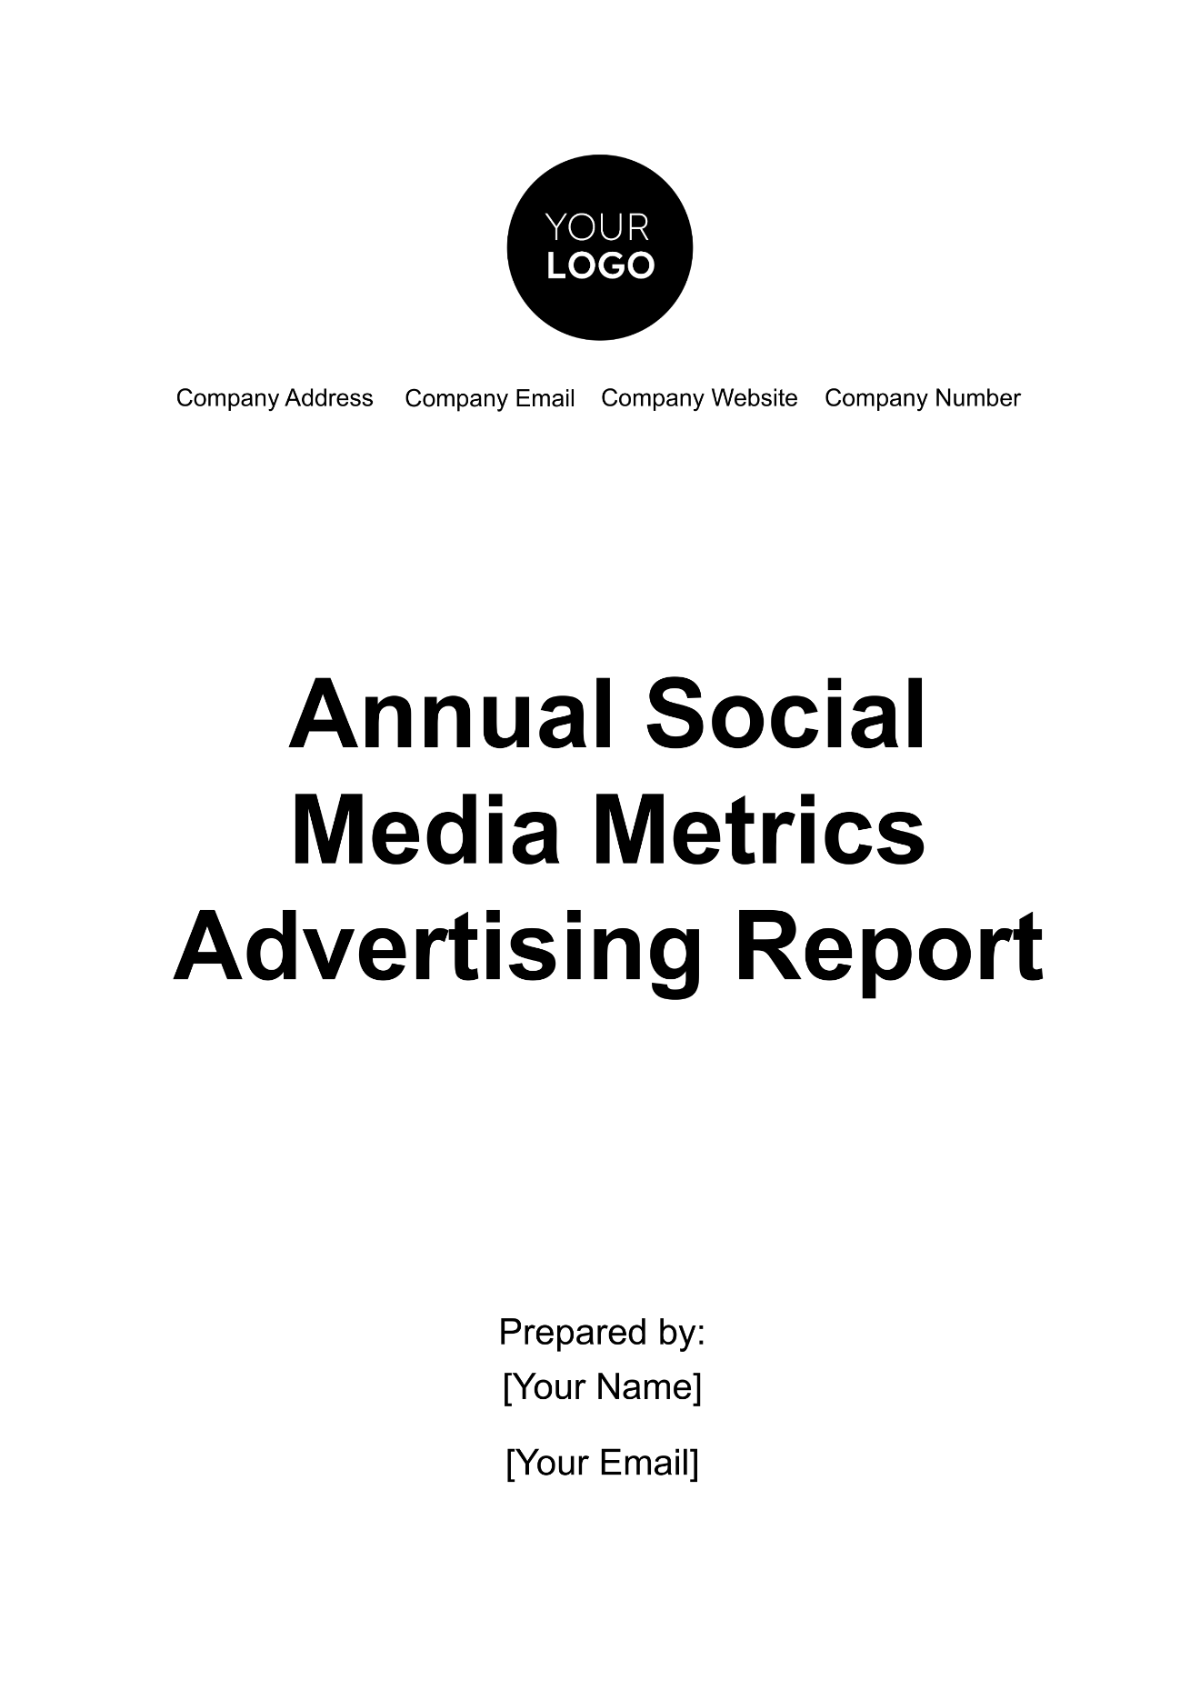 Free Annual Social Media Metrics Advertising Report Template